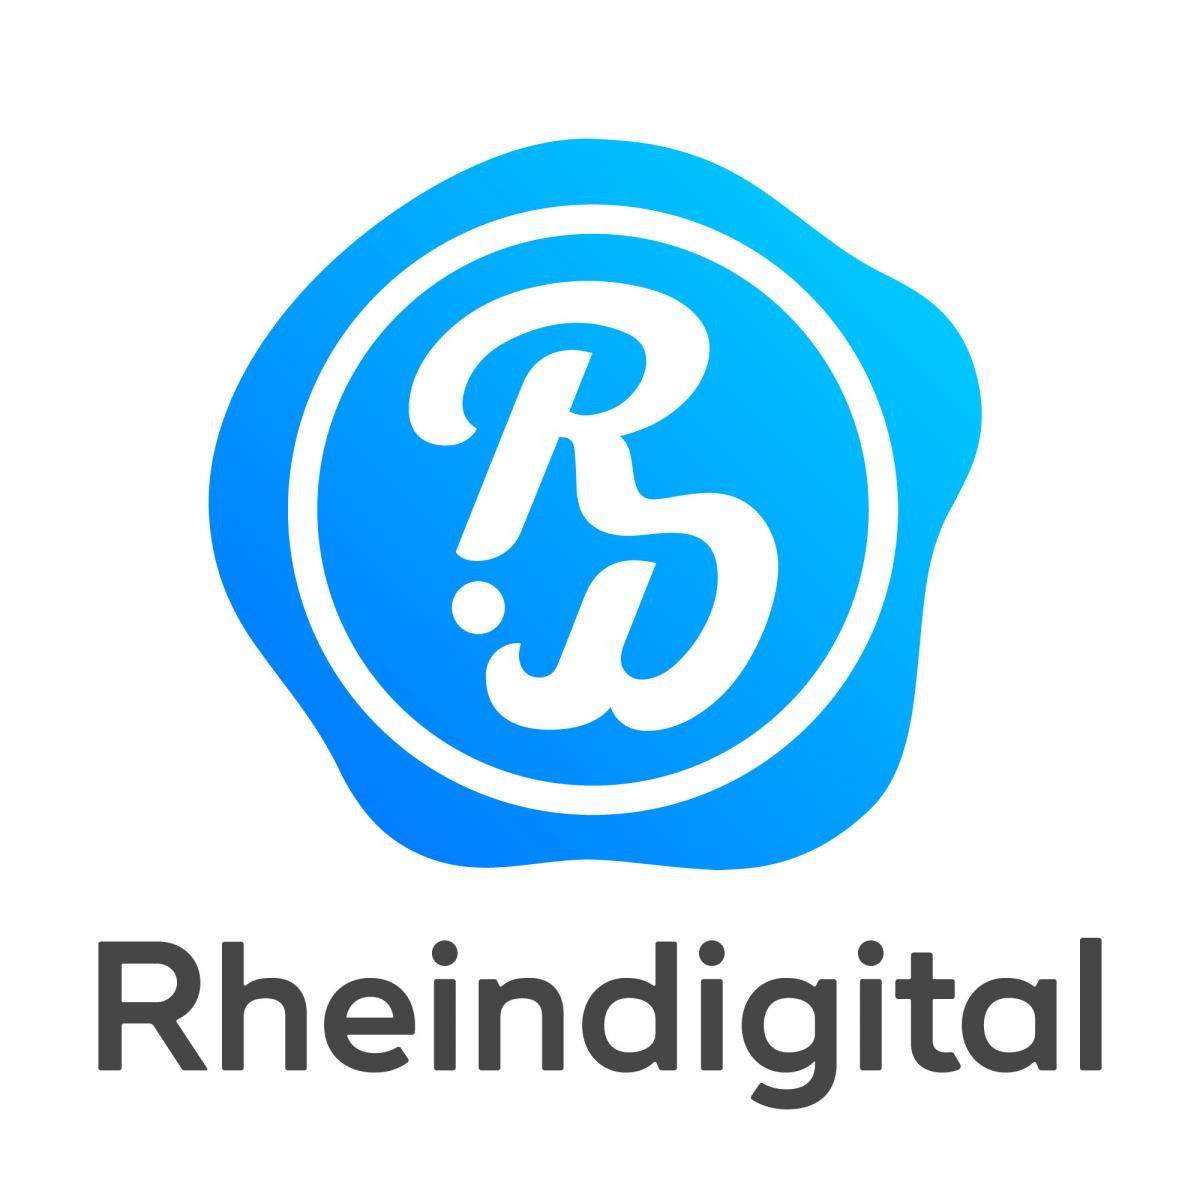 Rheindigital is a partner of World Para Dance Sport ©Rheindigital